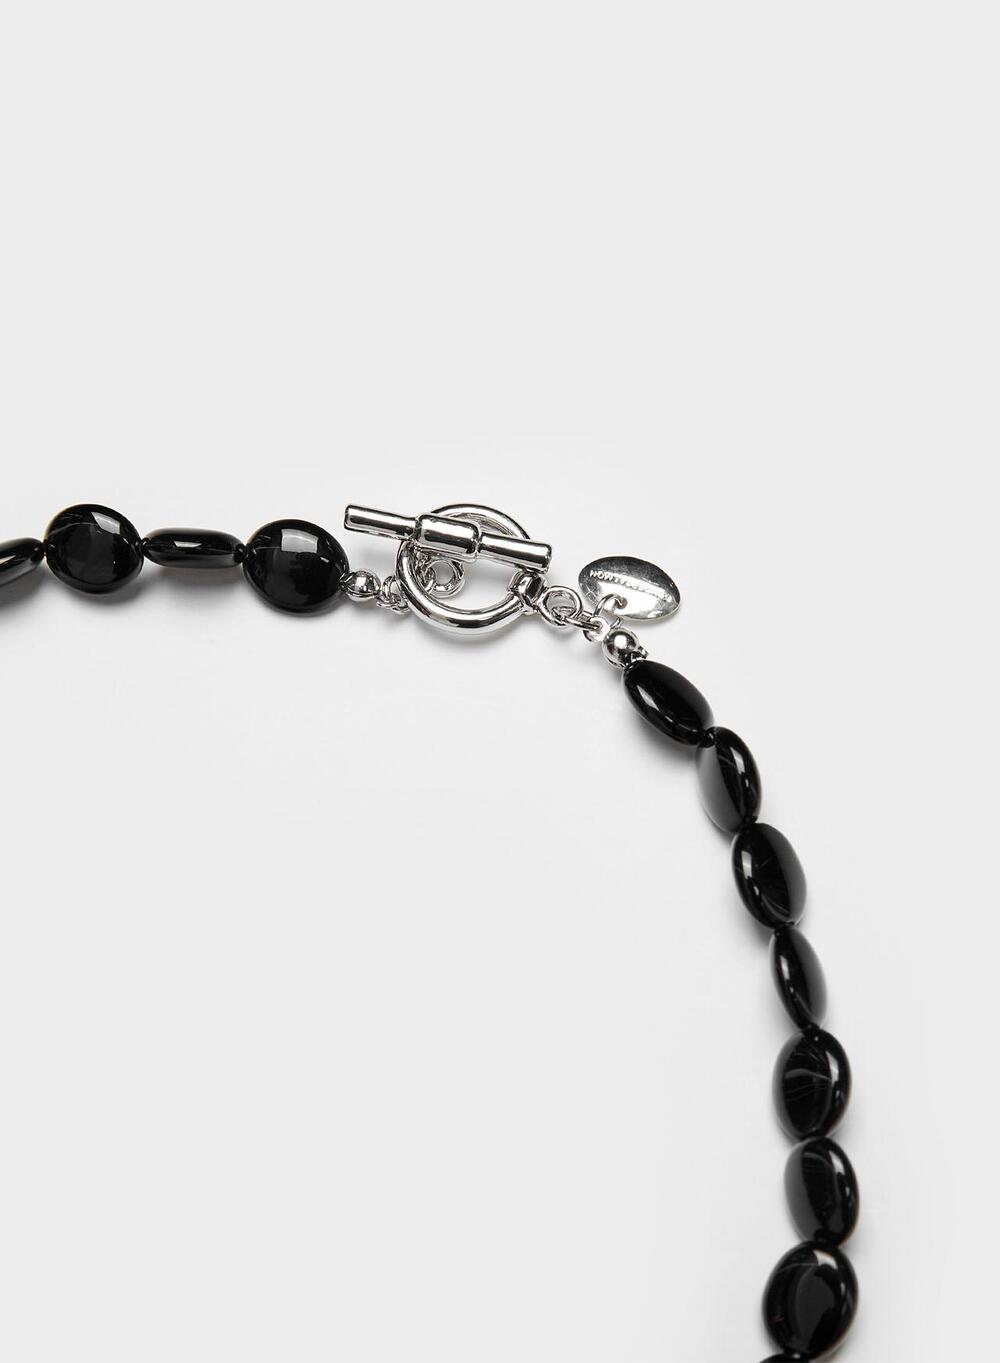 SS23 Luna Black Onyx Necklace